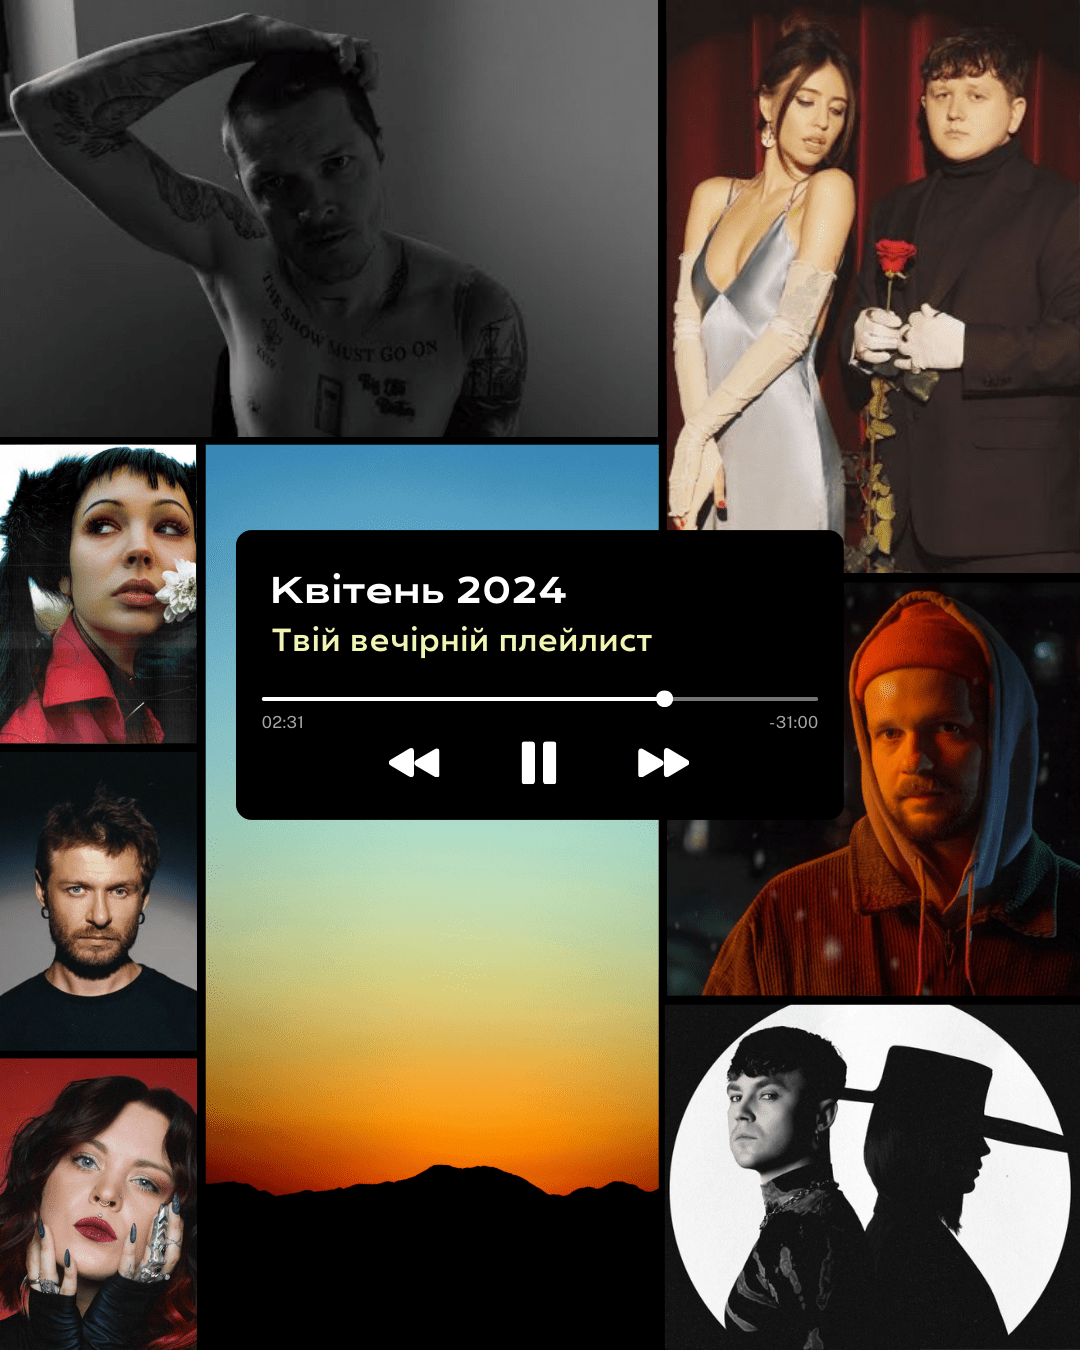 Що послухати увечері? Дорофєєва проти кібербулінгу, втомлені O.Torvald, Radiohead на київських вулицях та інші пісні квітня 2024